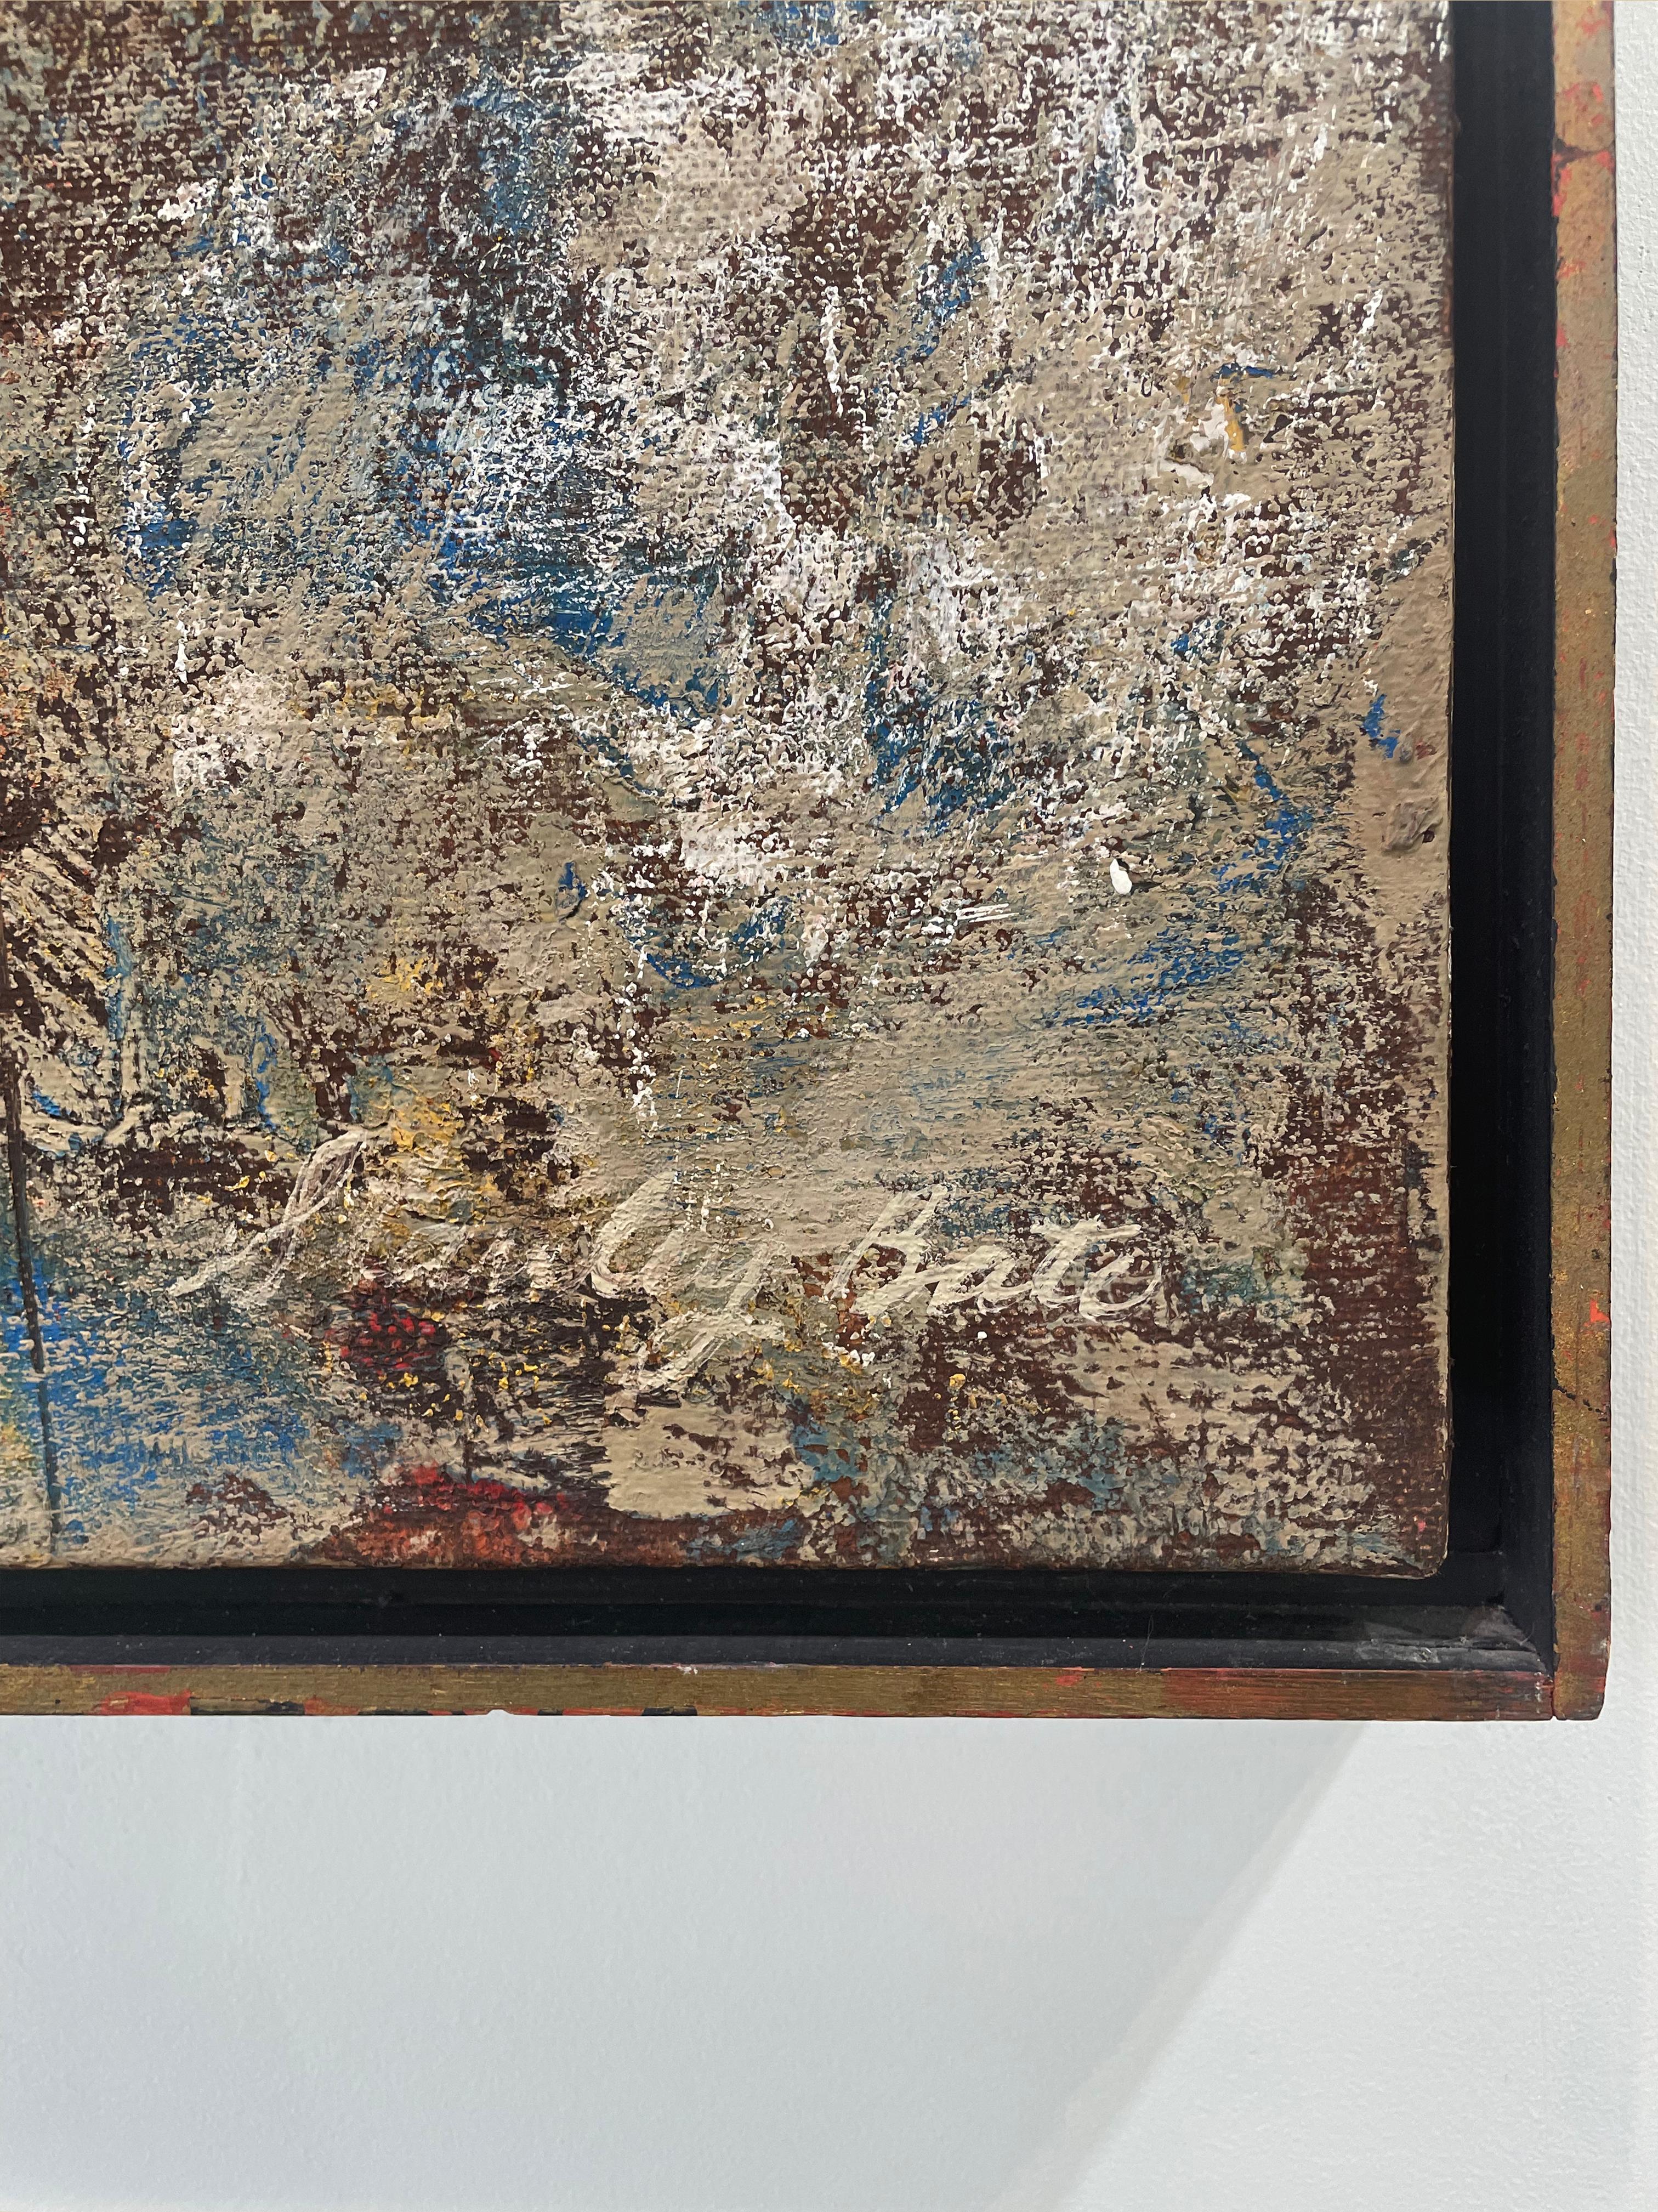 Cette peinture expressionniste abstraite moderne de Stanley Bate est réalisée à l'huile sur toile. La partie supérieure du tableau est une couleur or terreuse, tandis que l'espace en dessous est un mélange texturé de formes rouges et terre d'ombre